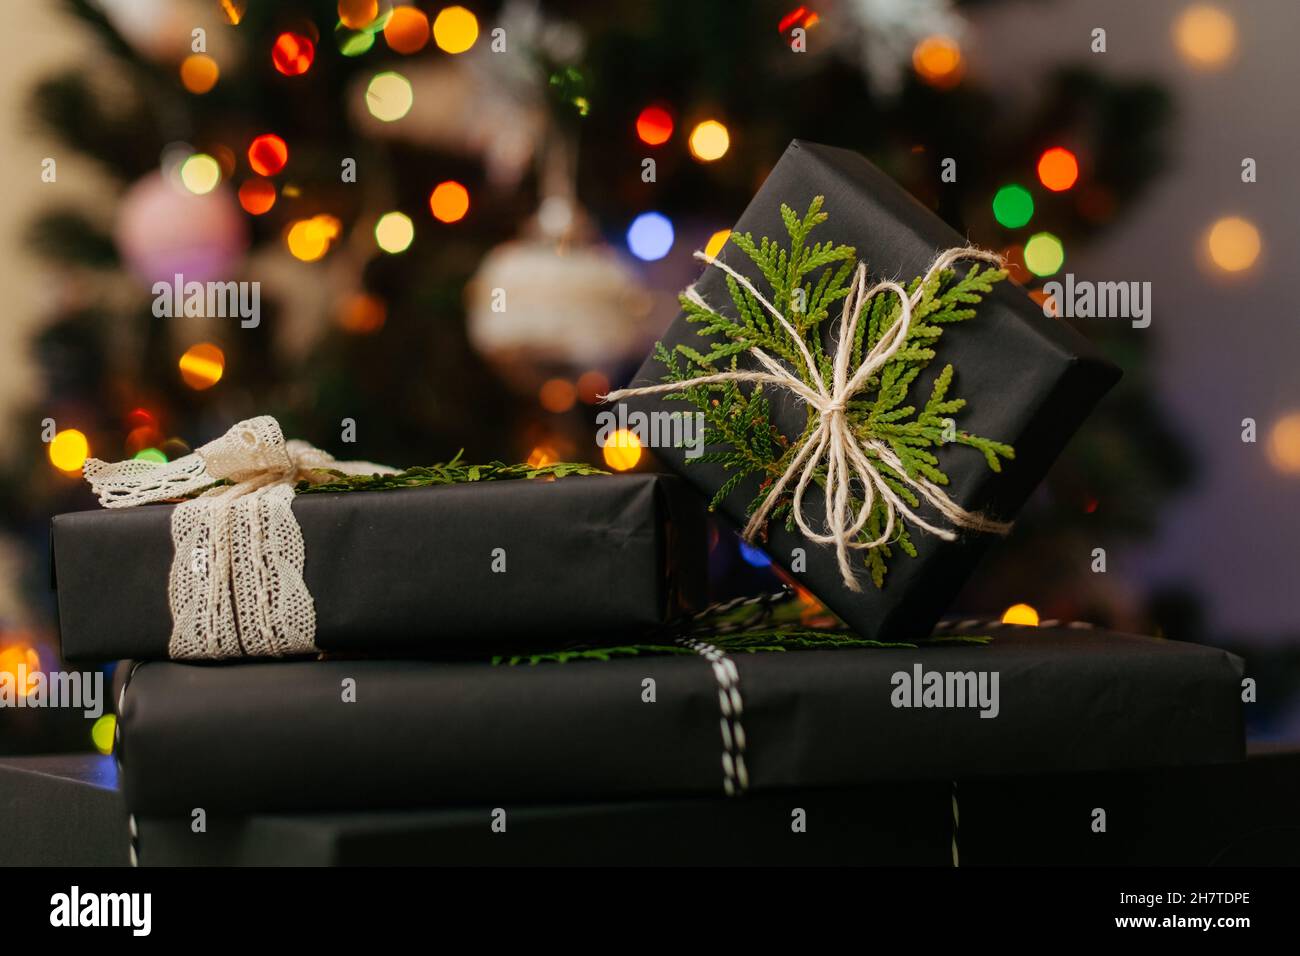 Schöne gemütliche Geschenkboxen in schwarzem Papier gewickelt, die auf grünem Textil liegen, defokussiertes Licht auf Weihnachtsbaum im Hintergrund. Nahaufnahme Stockfoto